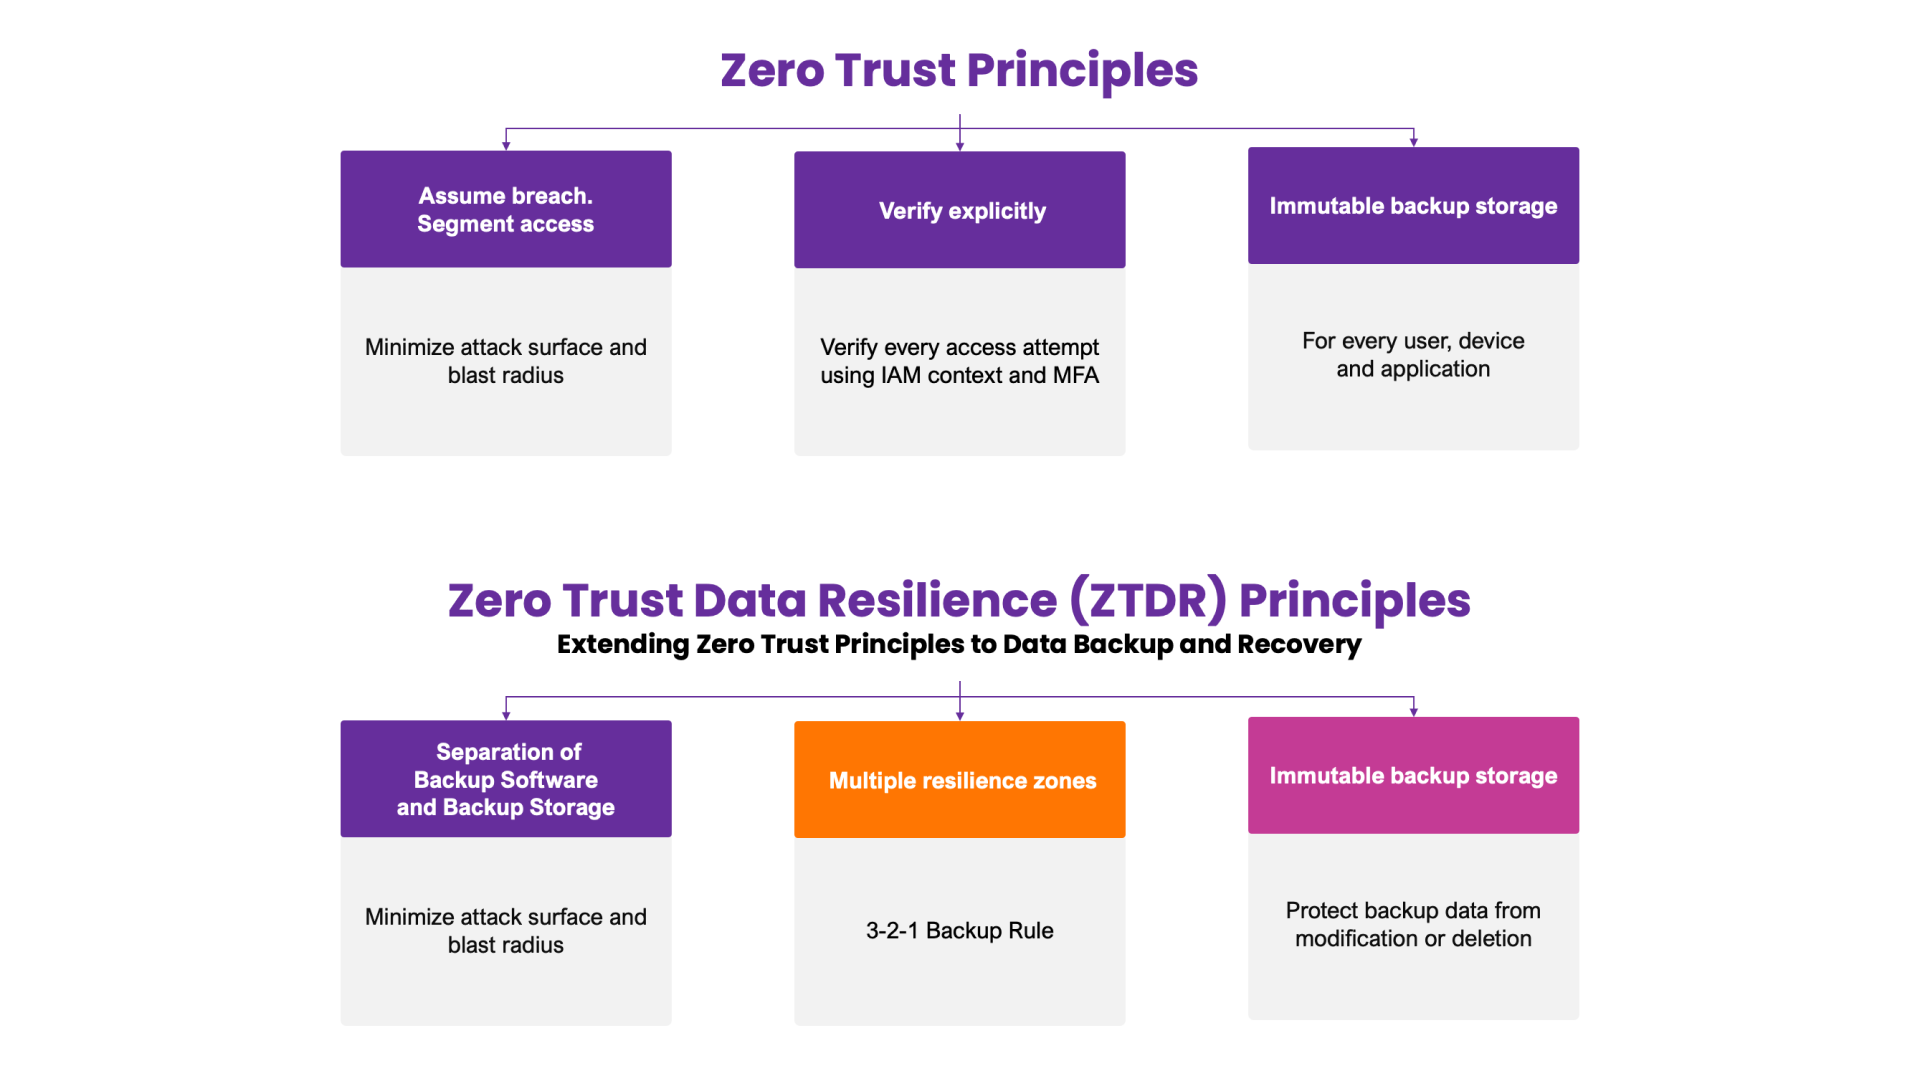 Diagramme illustrant les principes fondamentaux de la confiance zéro et de la résilience des données en confiance zéro (ZTDR). La partie supérieure met en évidence les principes de la confiance zéro : Assumer la violation, Vérifier explicitement, et Utiliser l'accès au moindre privilège. La section inférieure étend ces concepts à la résilience des données de confiance zéro pour la sauvegarde et la récupération des données d'entreprise, en se concentrant sur la segmentation du logiciel de sauvegarde et du stockage, les zones de résilience multiples et le stockage de sauvegarde immuable.